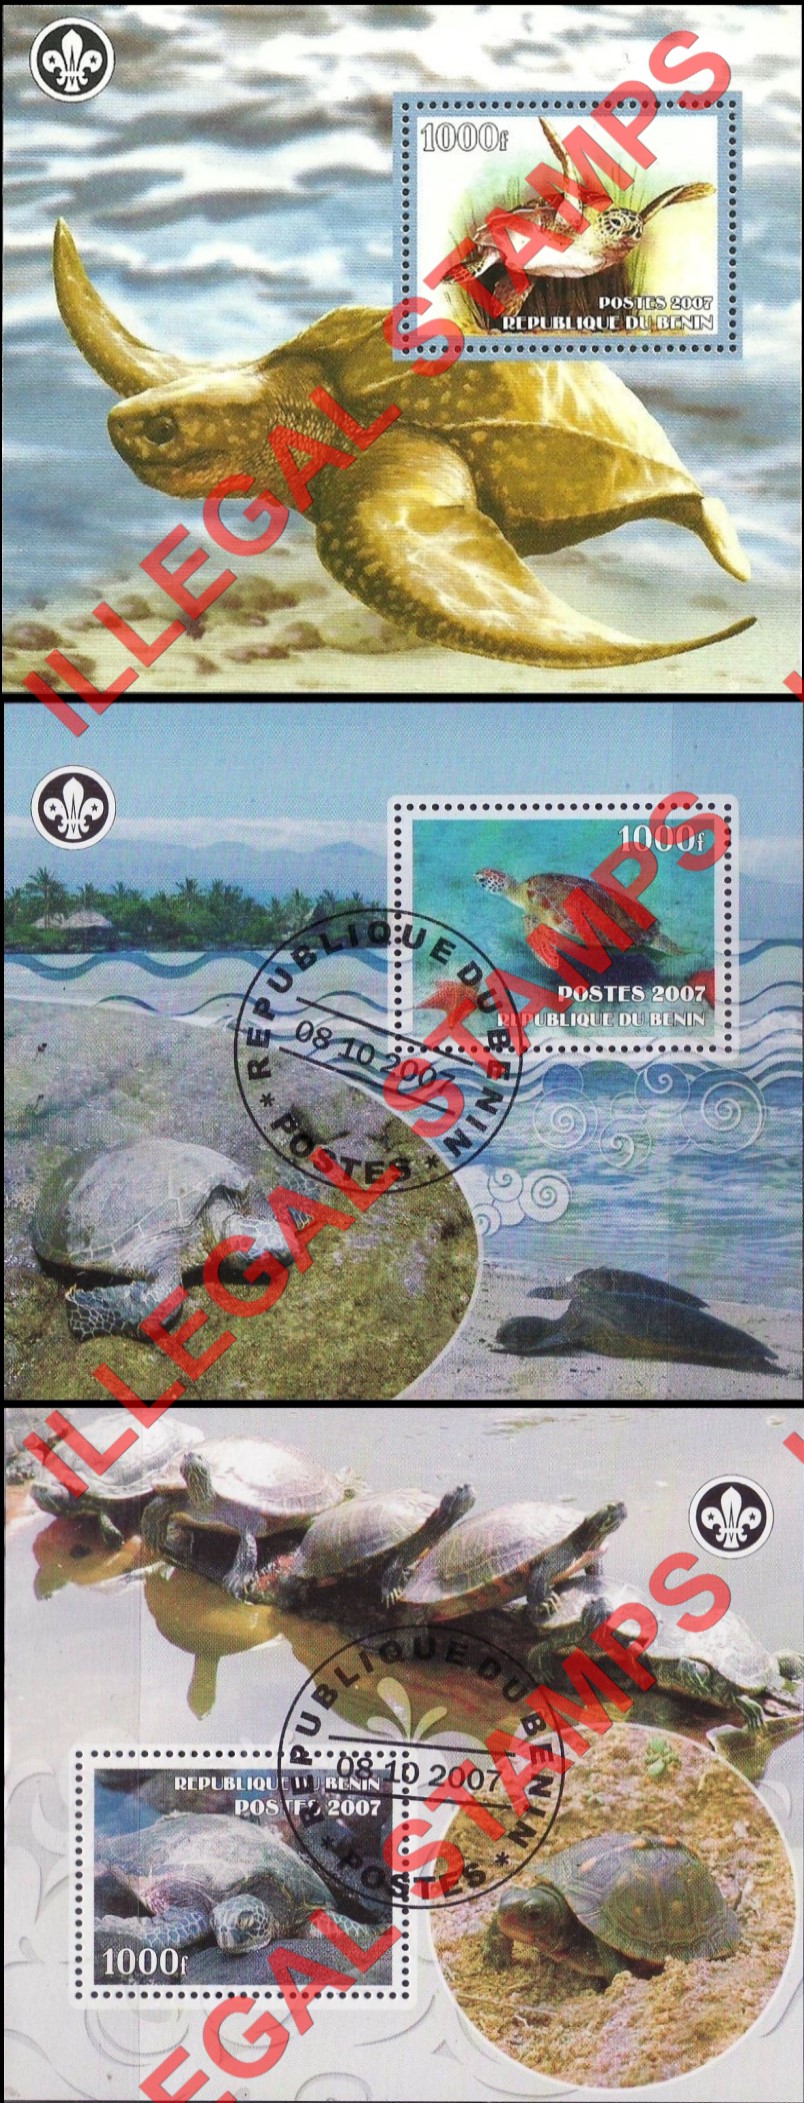 Benin 2007 Turtles Illegal Stamp Souvenir Sheets of 1